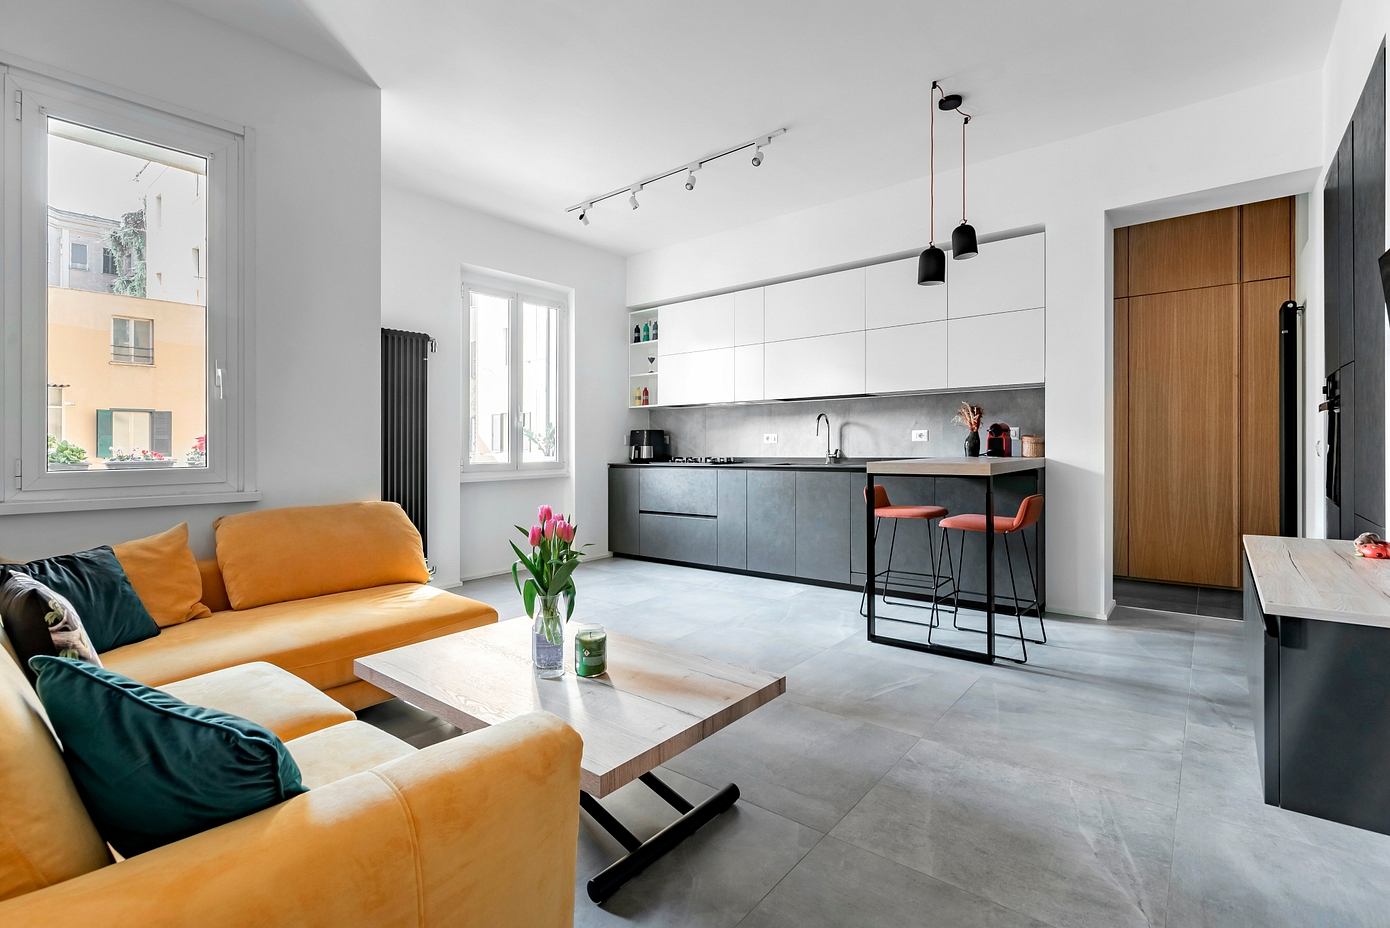 Casa T4: Caleidoscopio Architettura’s Contemporary Apartment Design